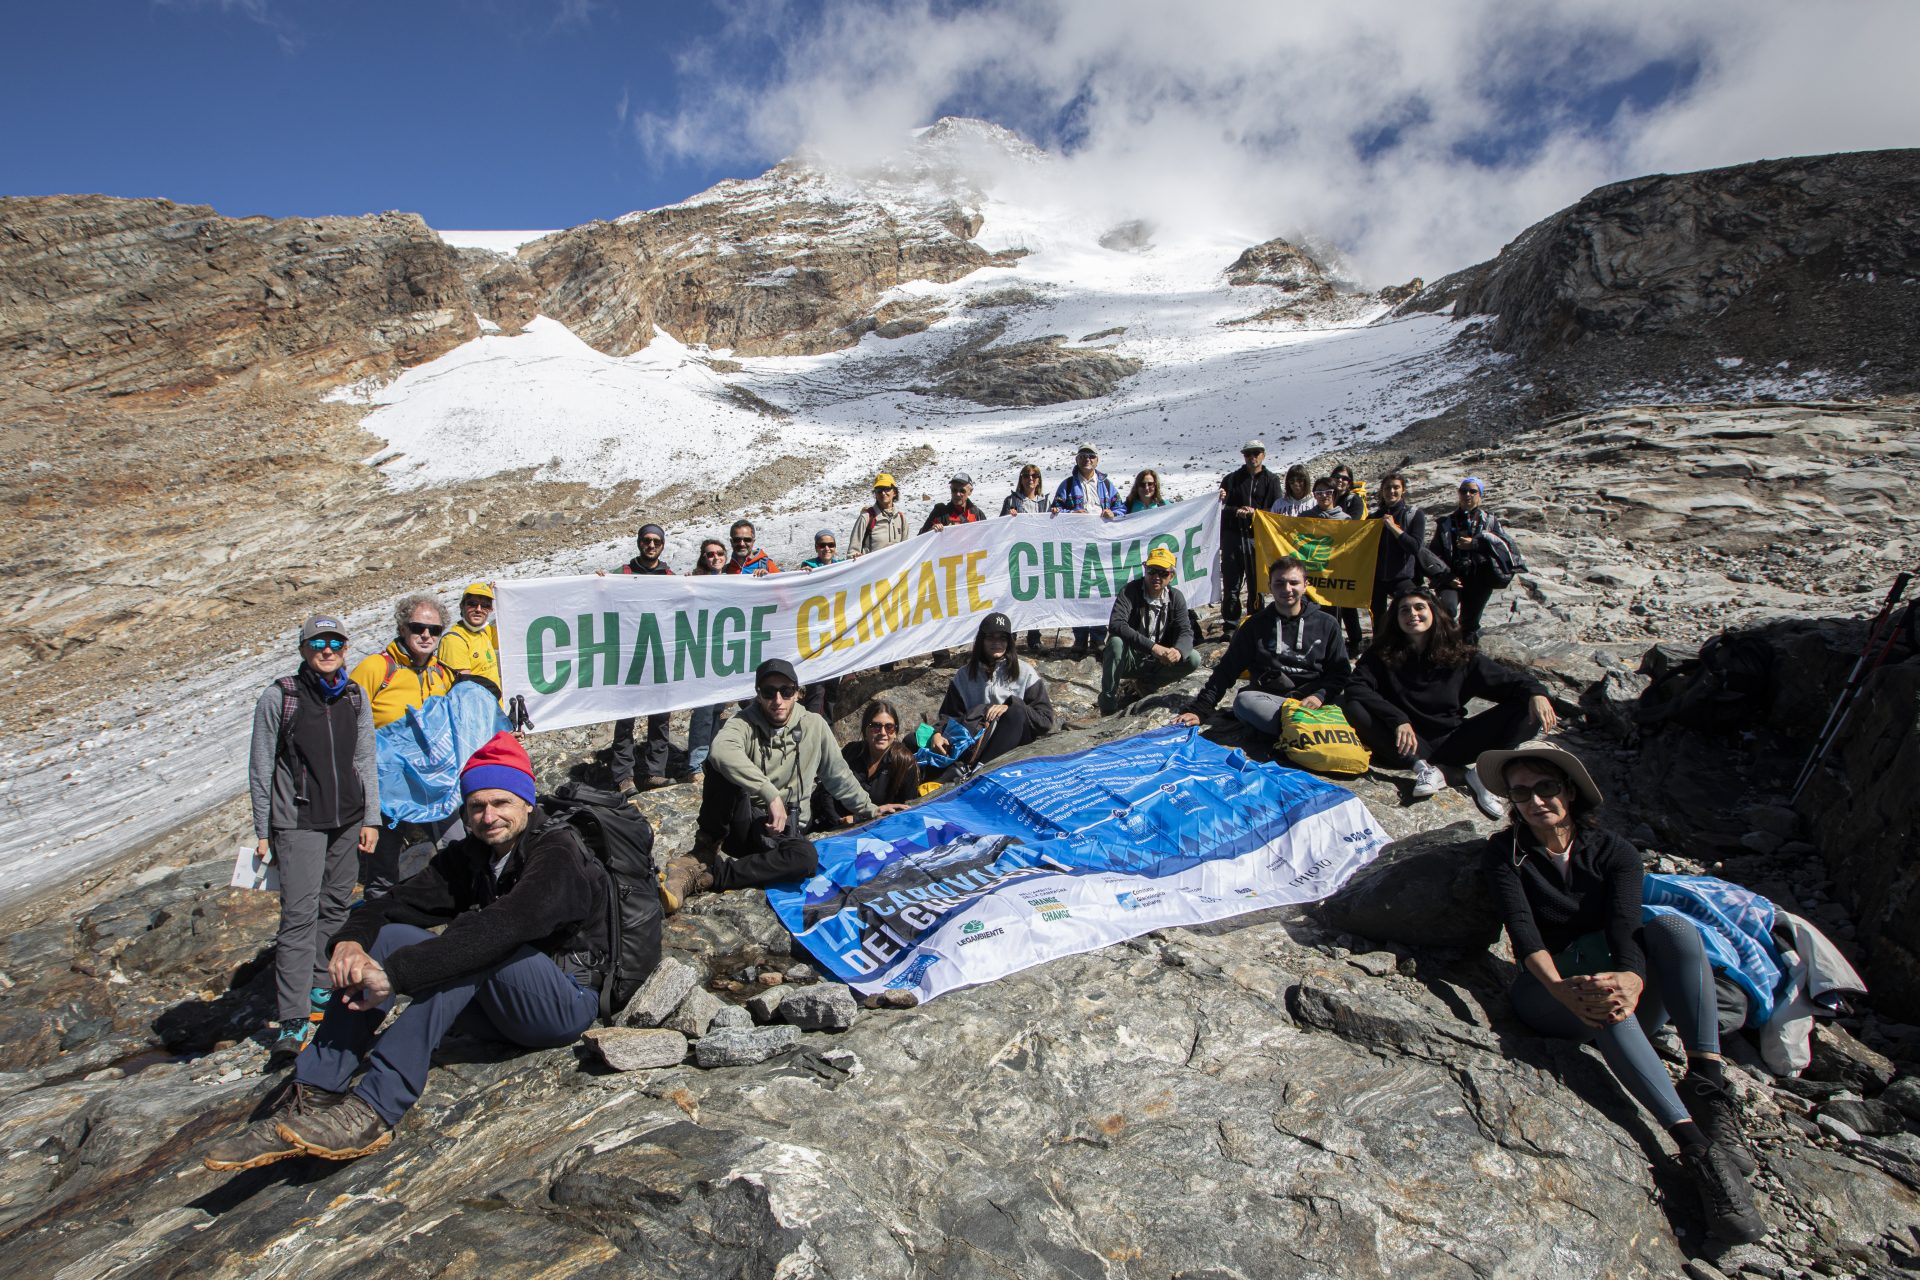 Gruppo di persone in montagna, tengono in mano un cartello con scritto "Change climate change"